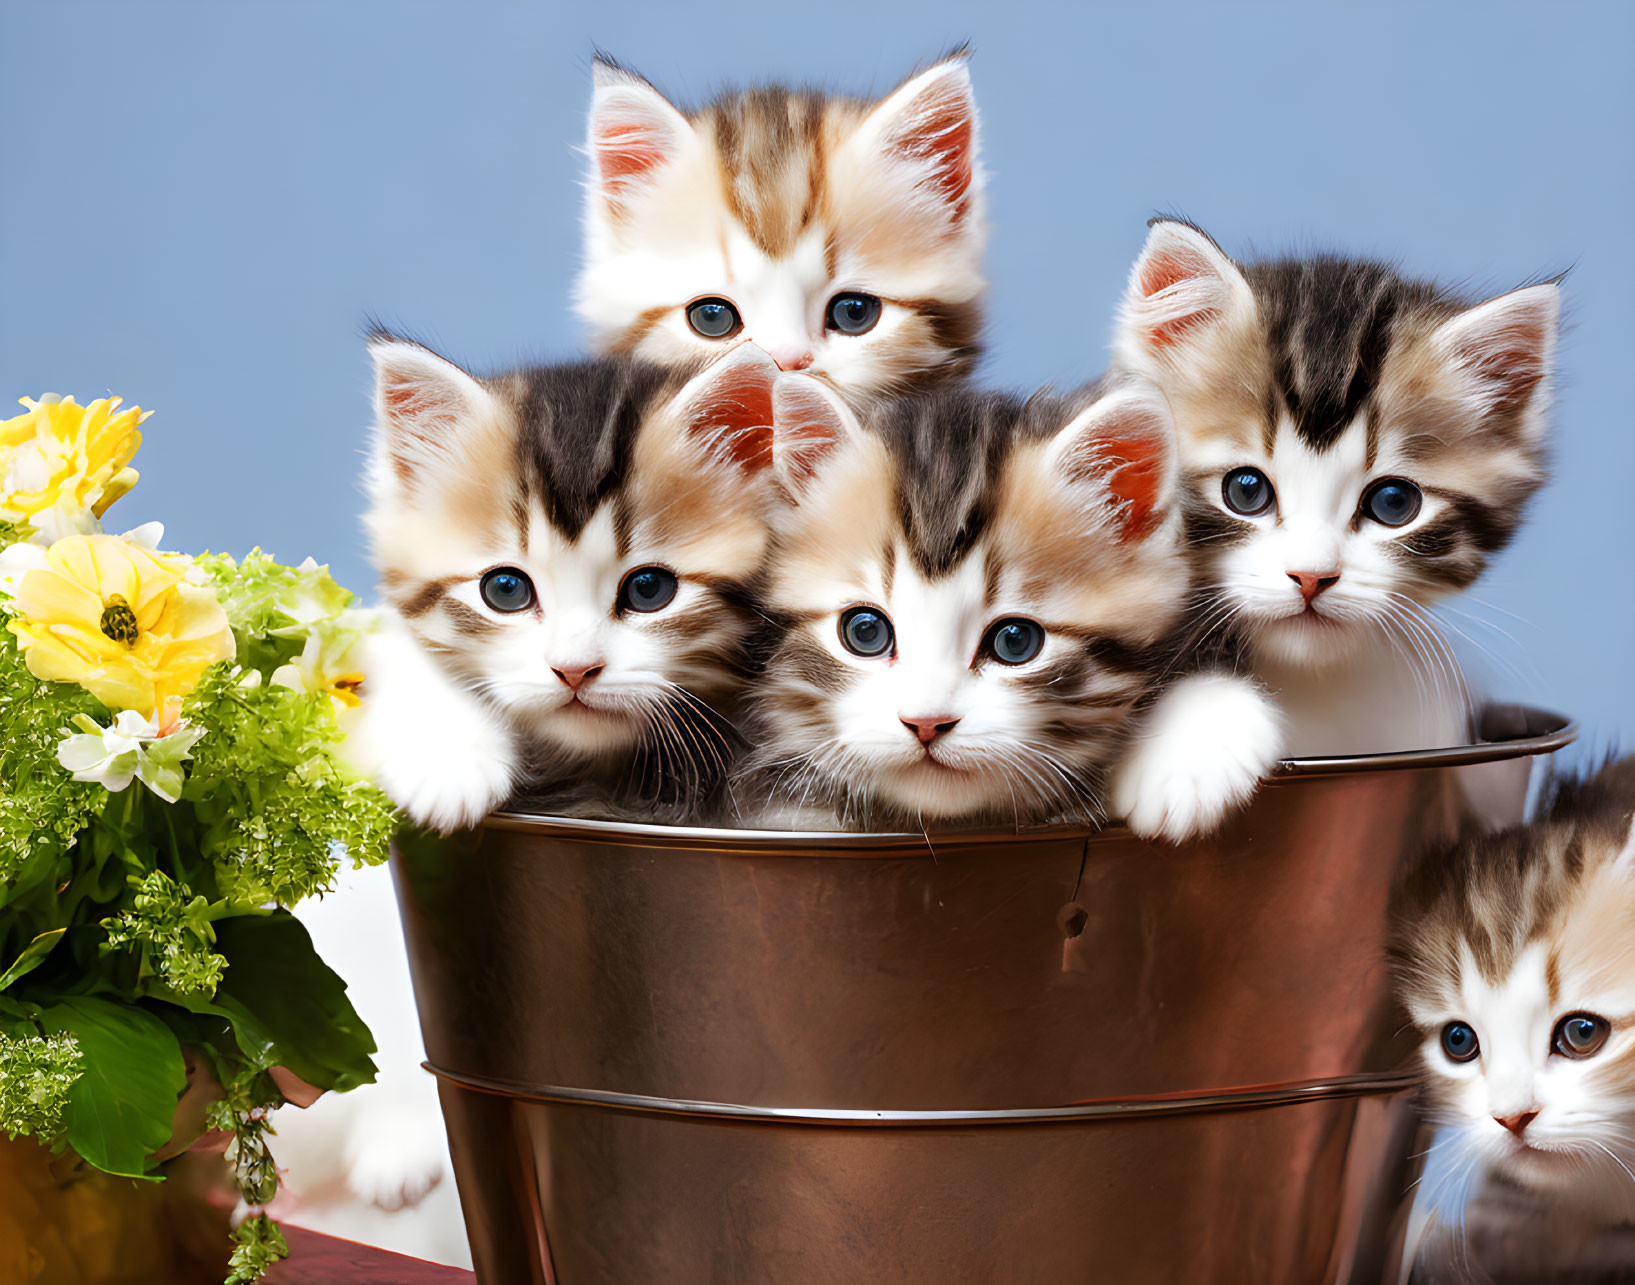 A bucket of kittens